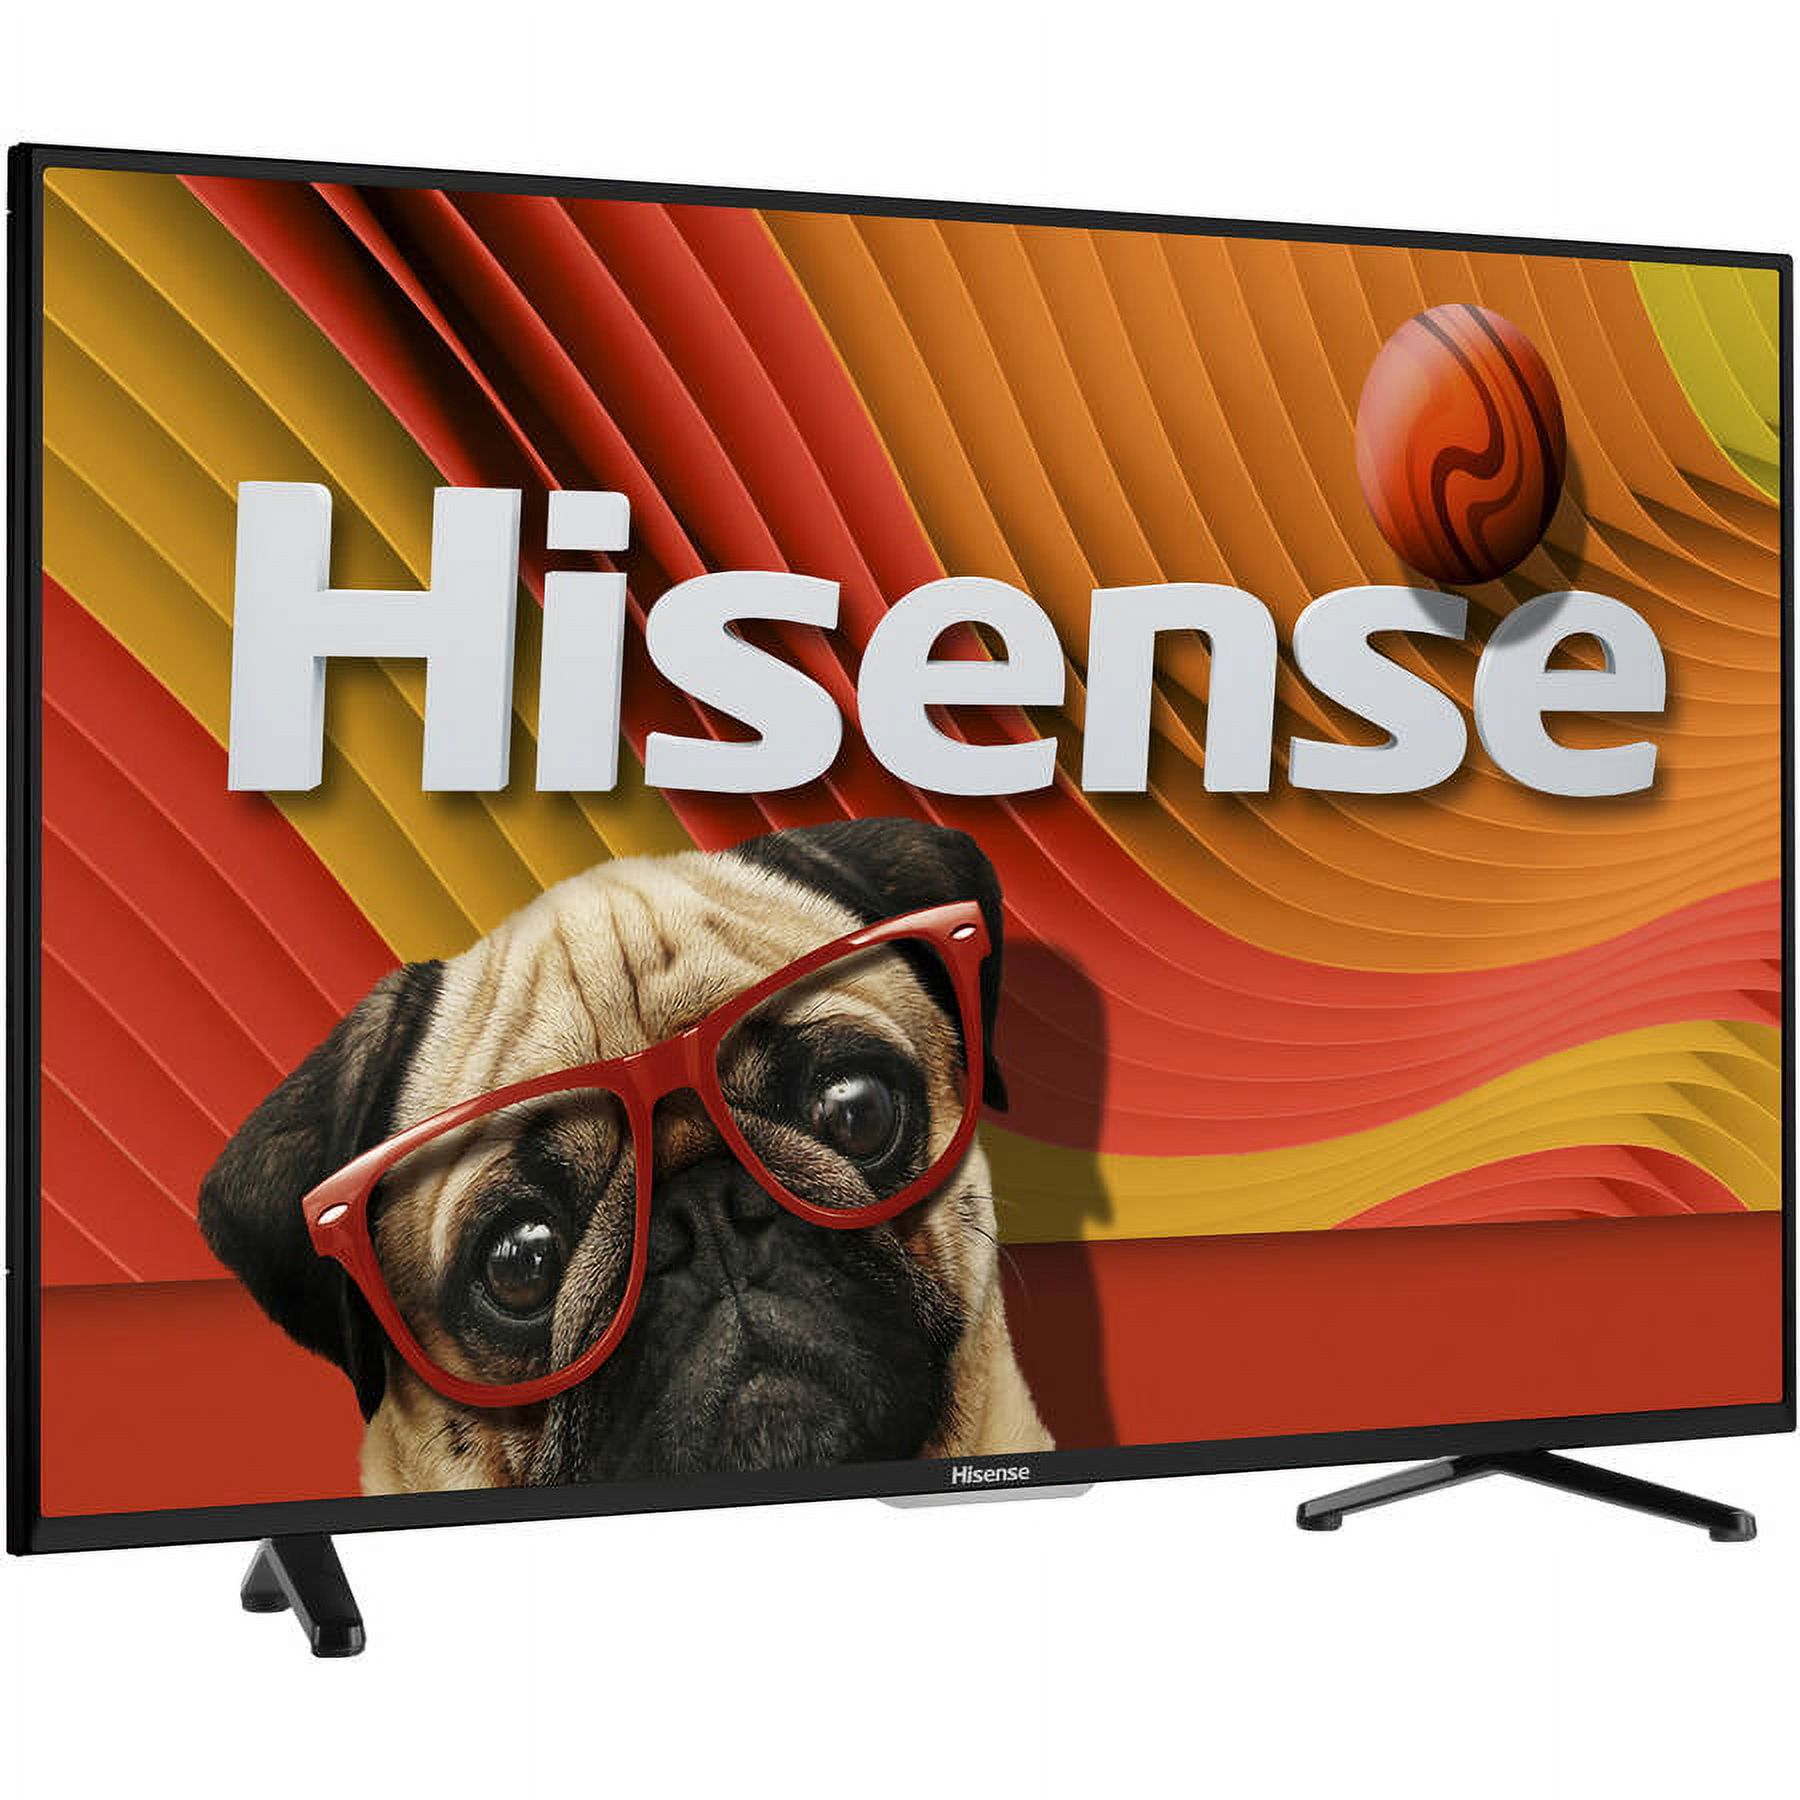 Hisense 50H5GB 50" 1080p 120Hz Class LED Smart HDTV - image 1 of 9